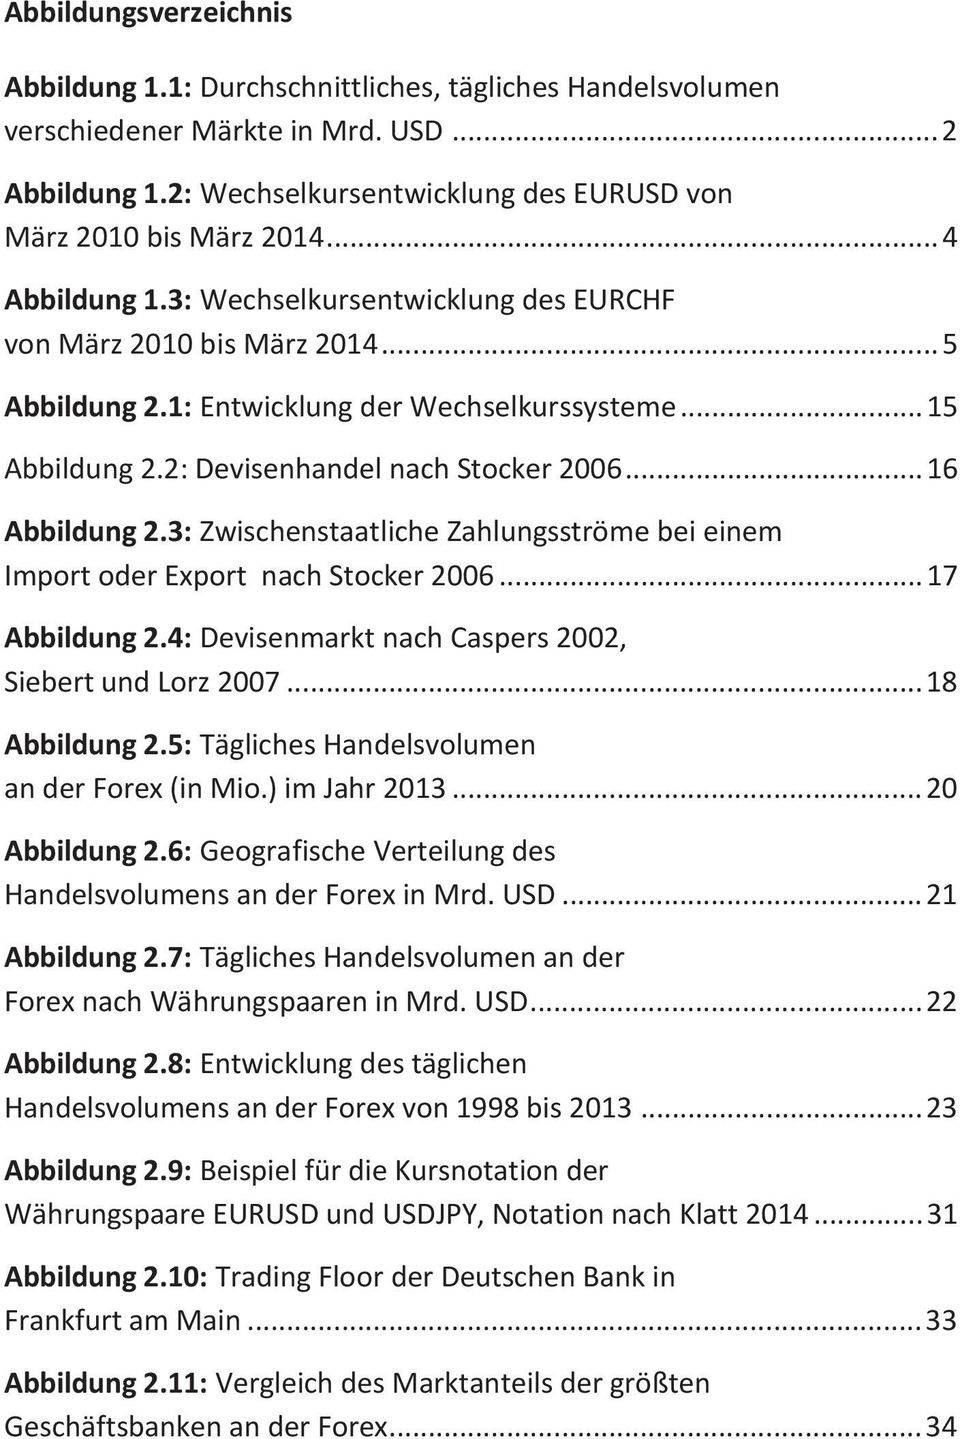 .. 16 Abbildung 2.3: Zwischenstaatliche Zahlungsströme bei einem Import oder Export nach Stocker 2006... 17 Abbildung 2.4: Devisenmarkt nach Caspers 2002, Siebert und Lorz 2007... 18 Abbildung 2.